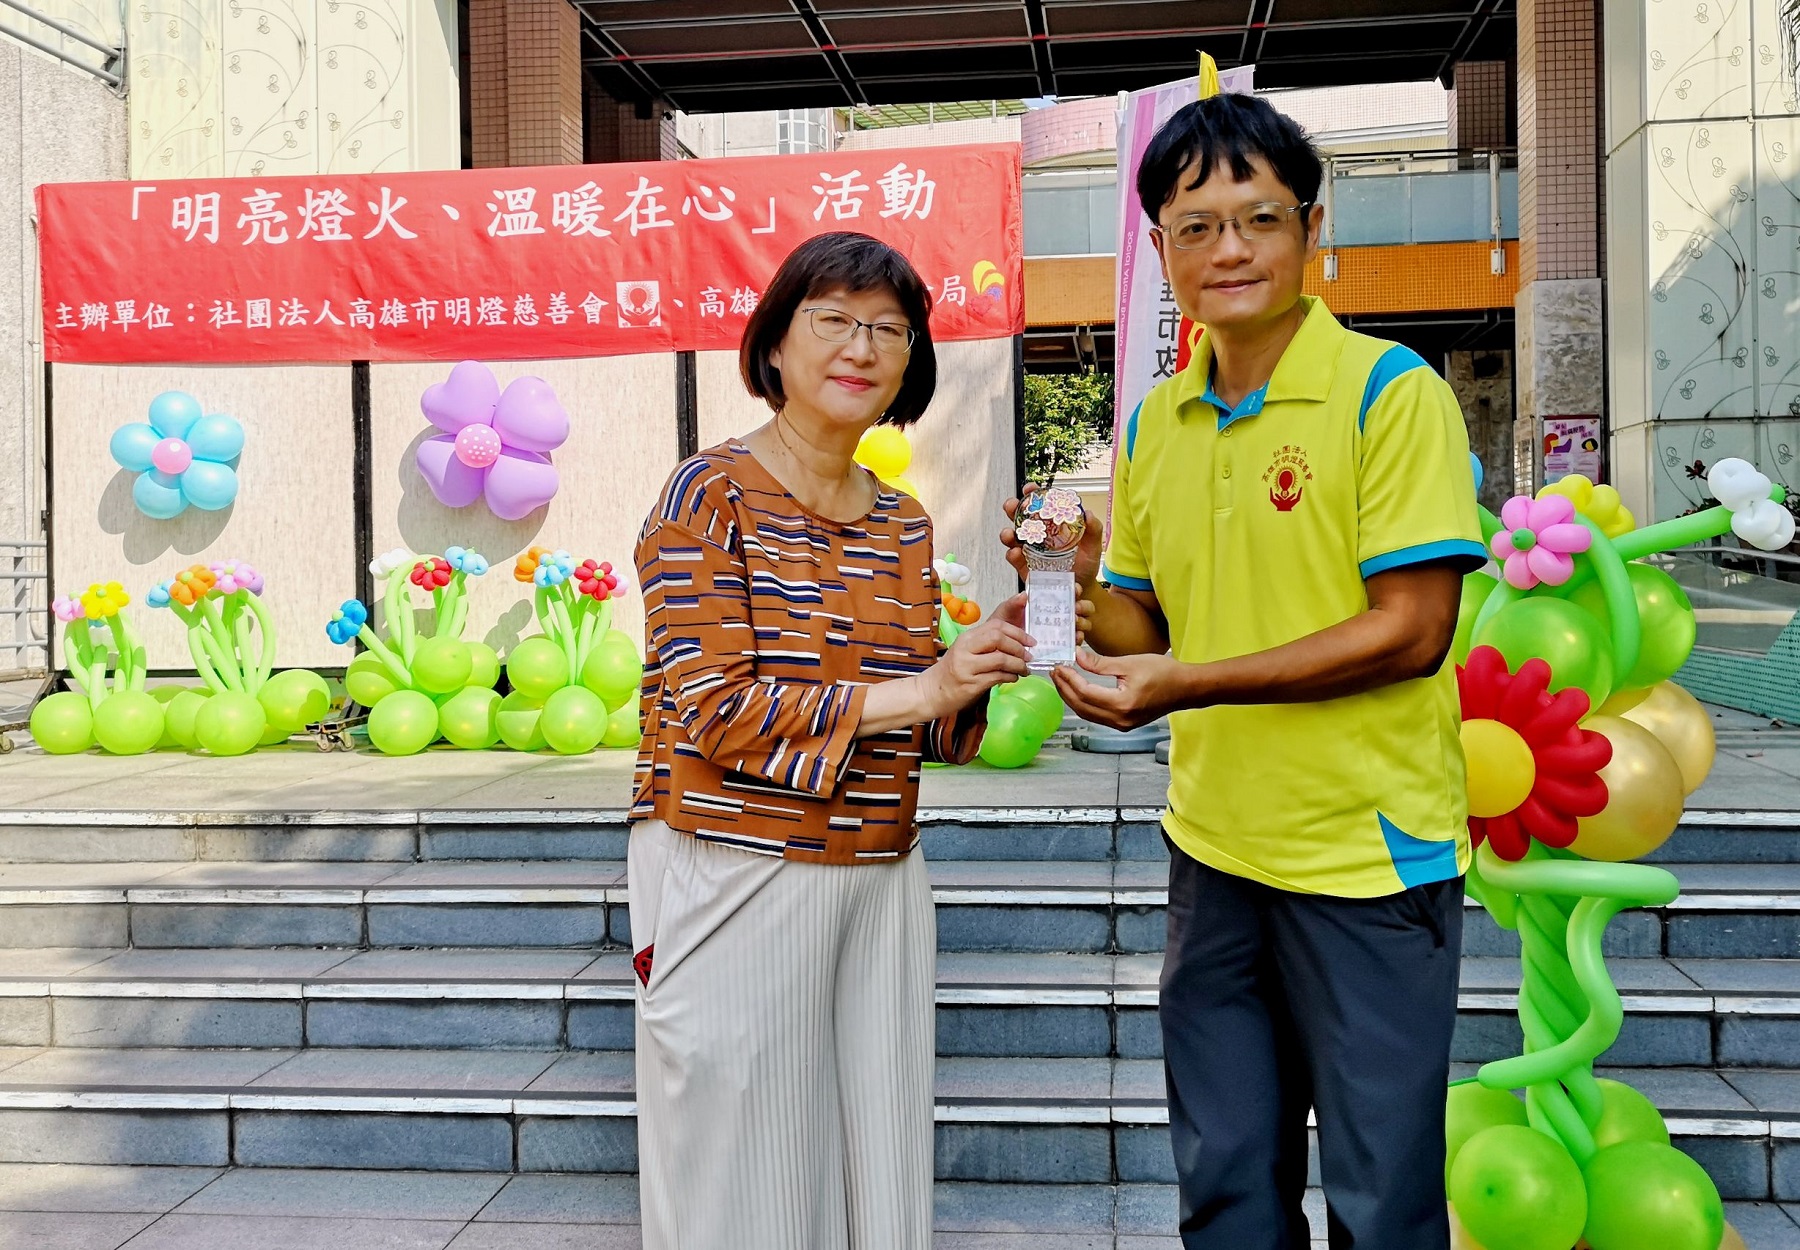 高雄市明燈慈善會結合社福中心助弱勢　捐90萬善款溫馨送暖 - 早安台灣新聞 | Morning Taiwan News